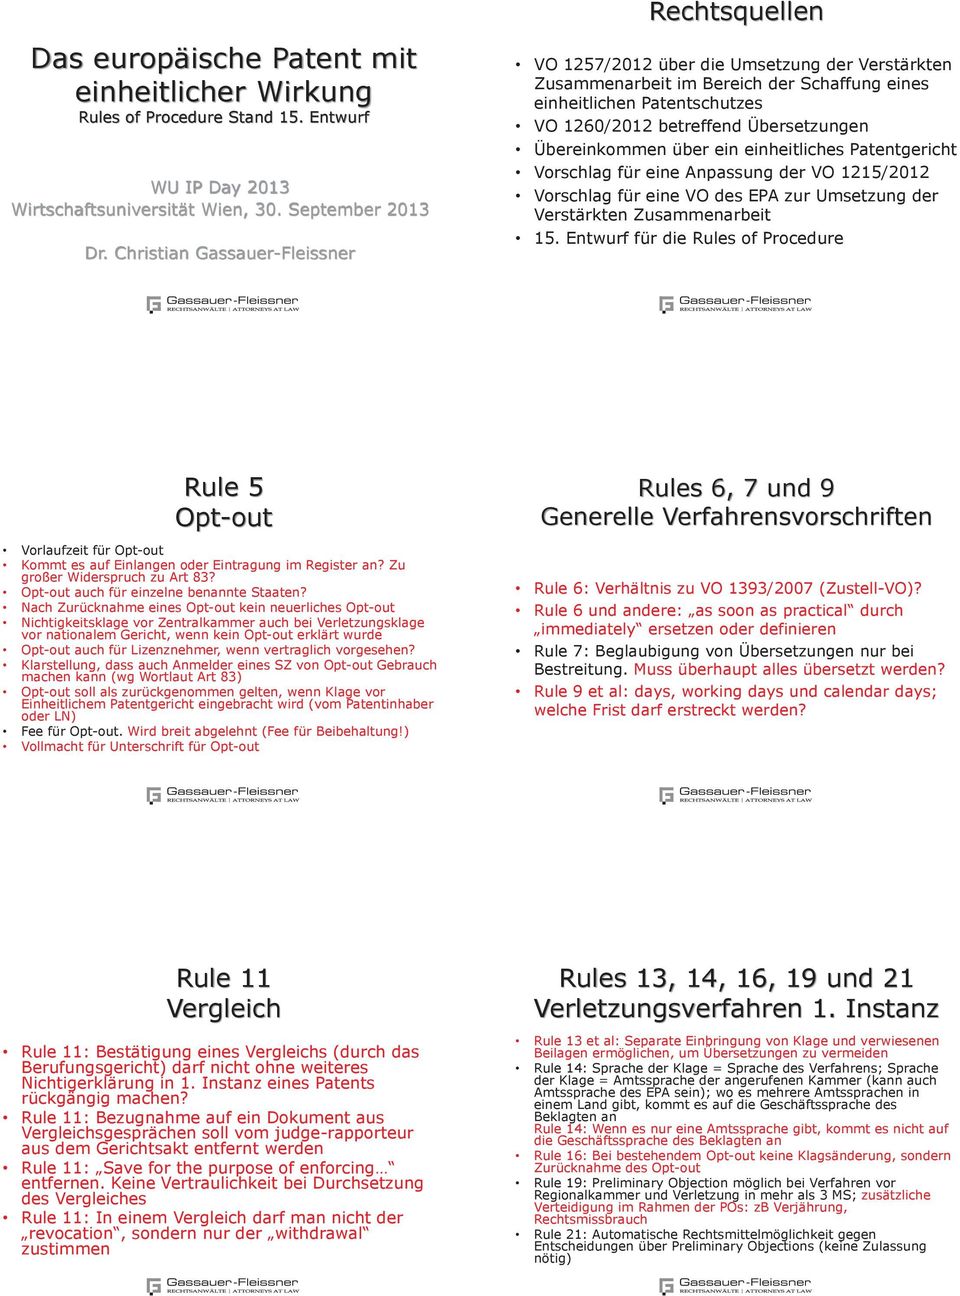 Übersetzungen Übereinkommen über ein einheitliches Patentgericht Vorschlag für eine Anpassung der VO 1215/2012 Vorschlag für eine VO des EPA zur Umsetzung der Verstärkten Zusammenarbeit 15.